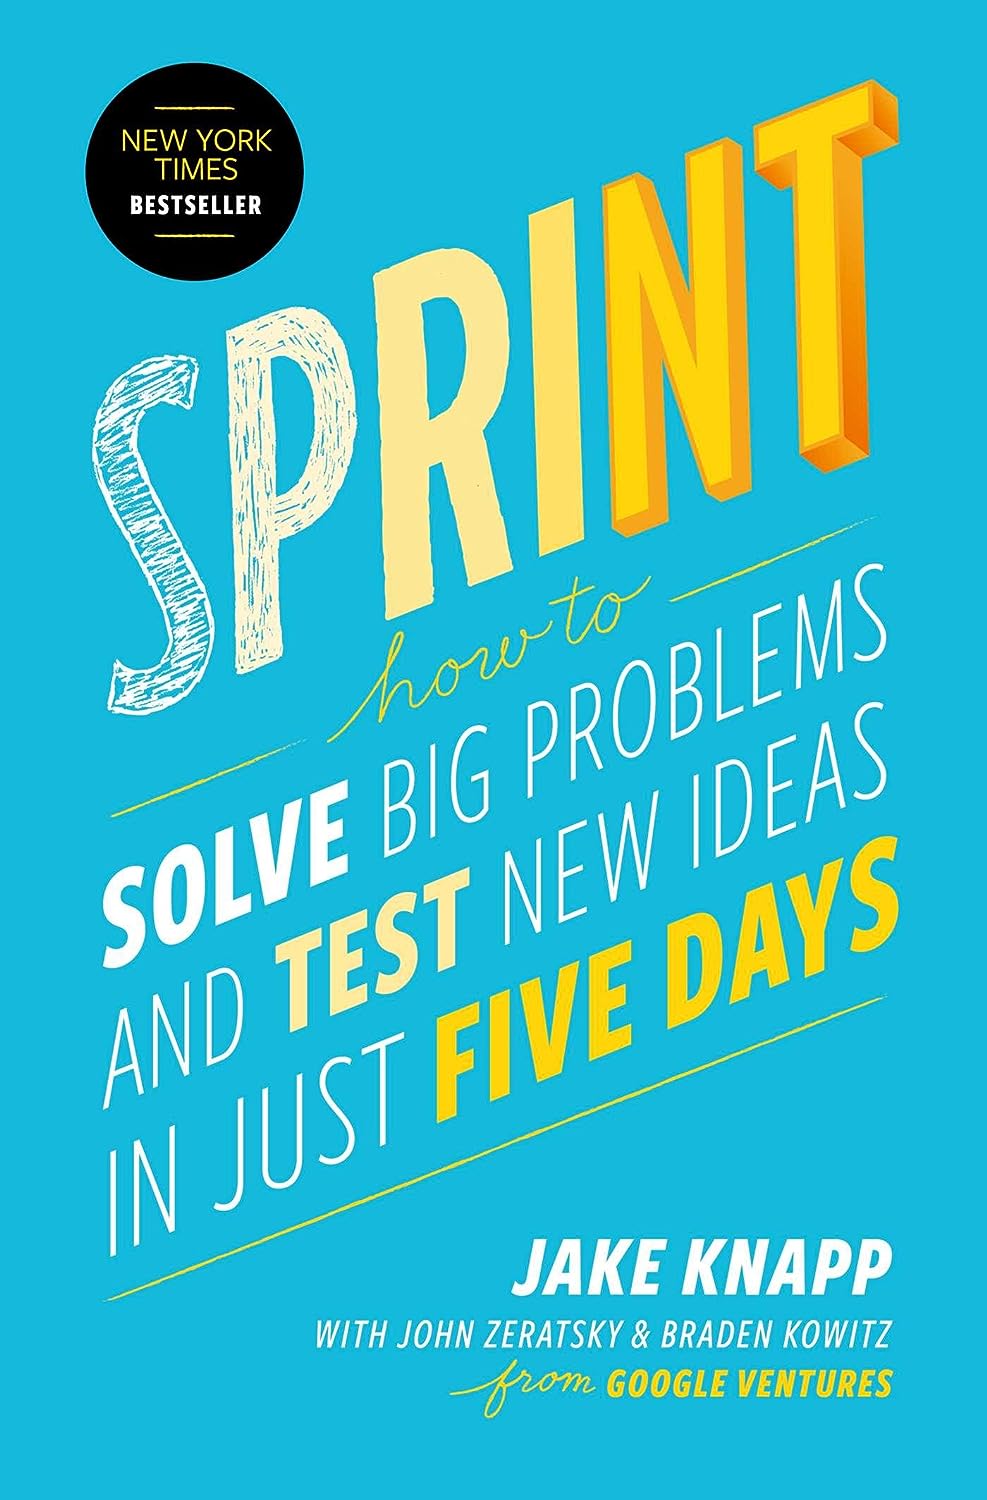 Sprint Book Summary